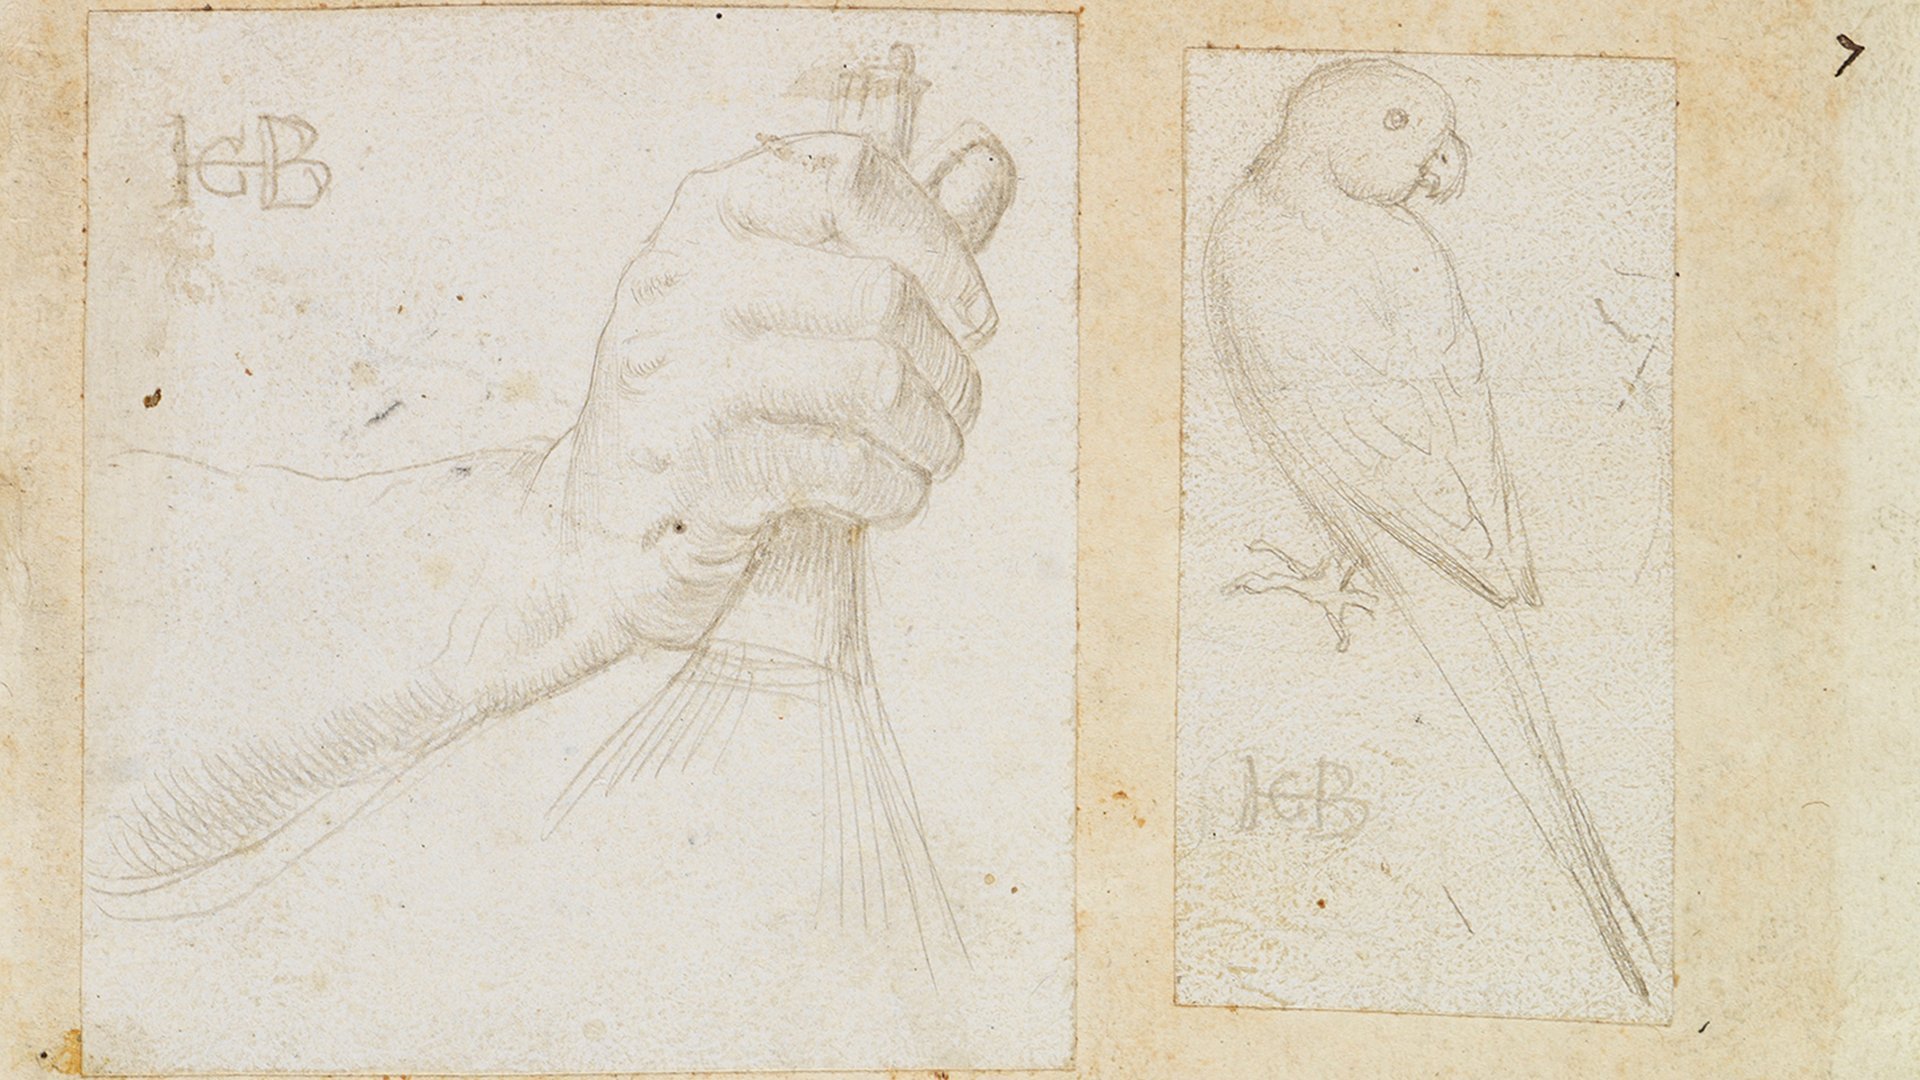 Abbildung eines Details aus Hans Baldung Griens Skizzenbuch. Die Skizzen zeigen einmal eine Hand und einmal einen Vogel.